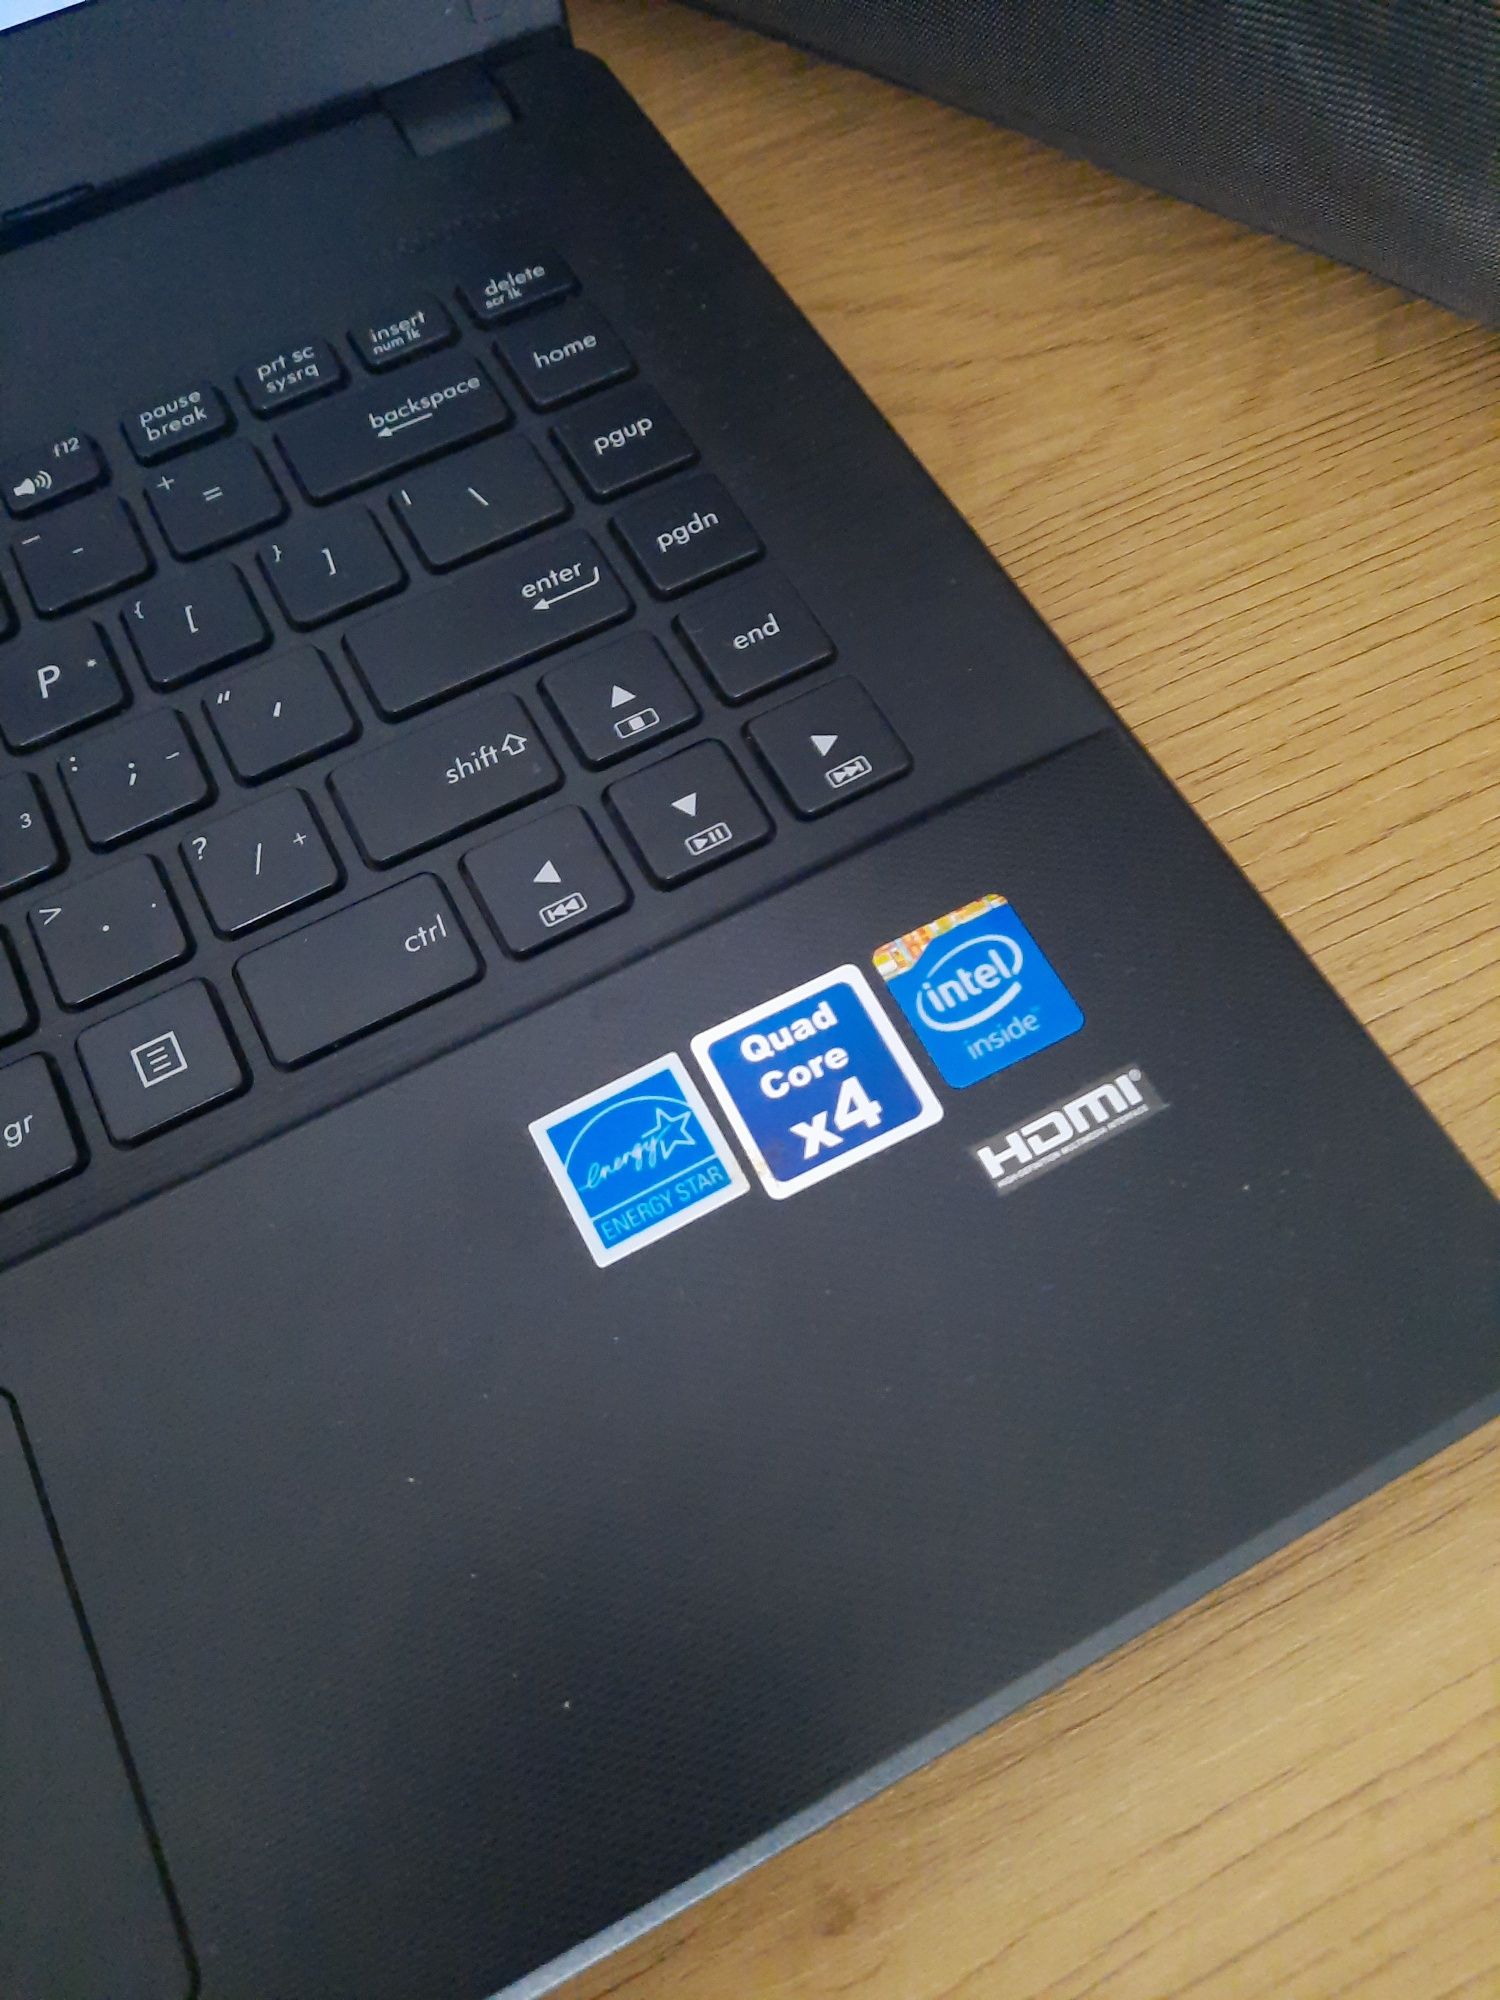 Laptop Asus  X451